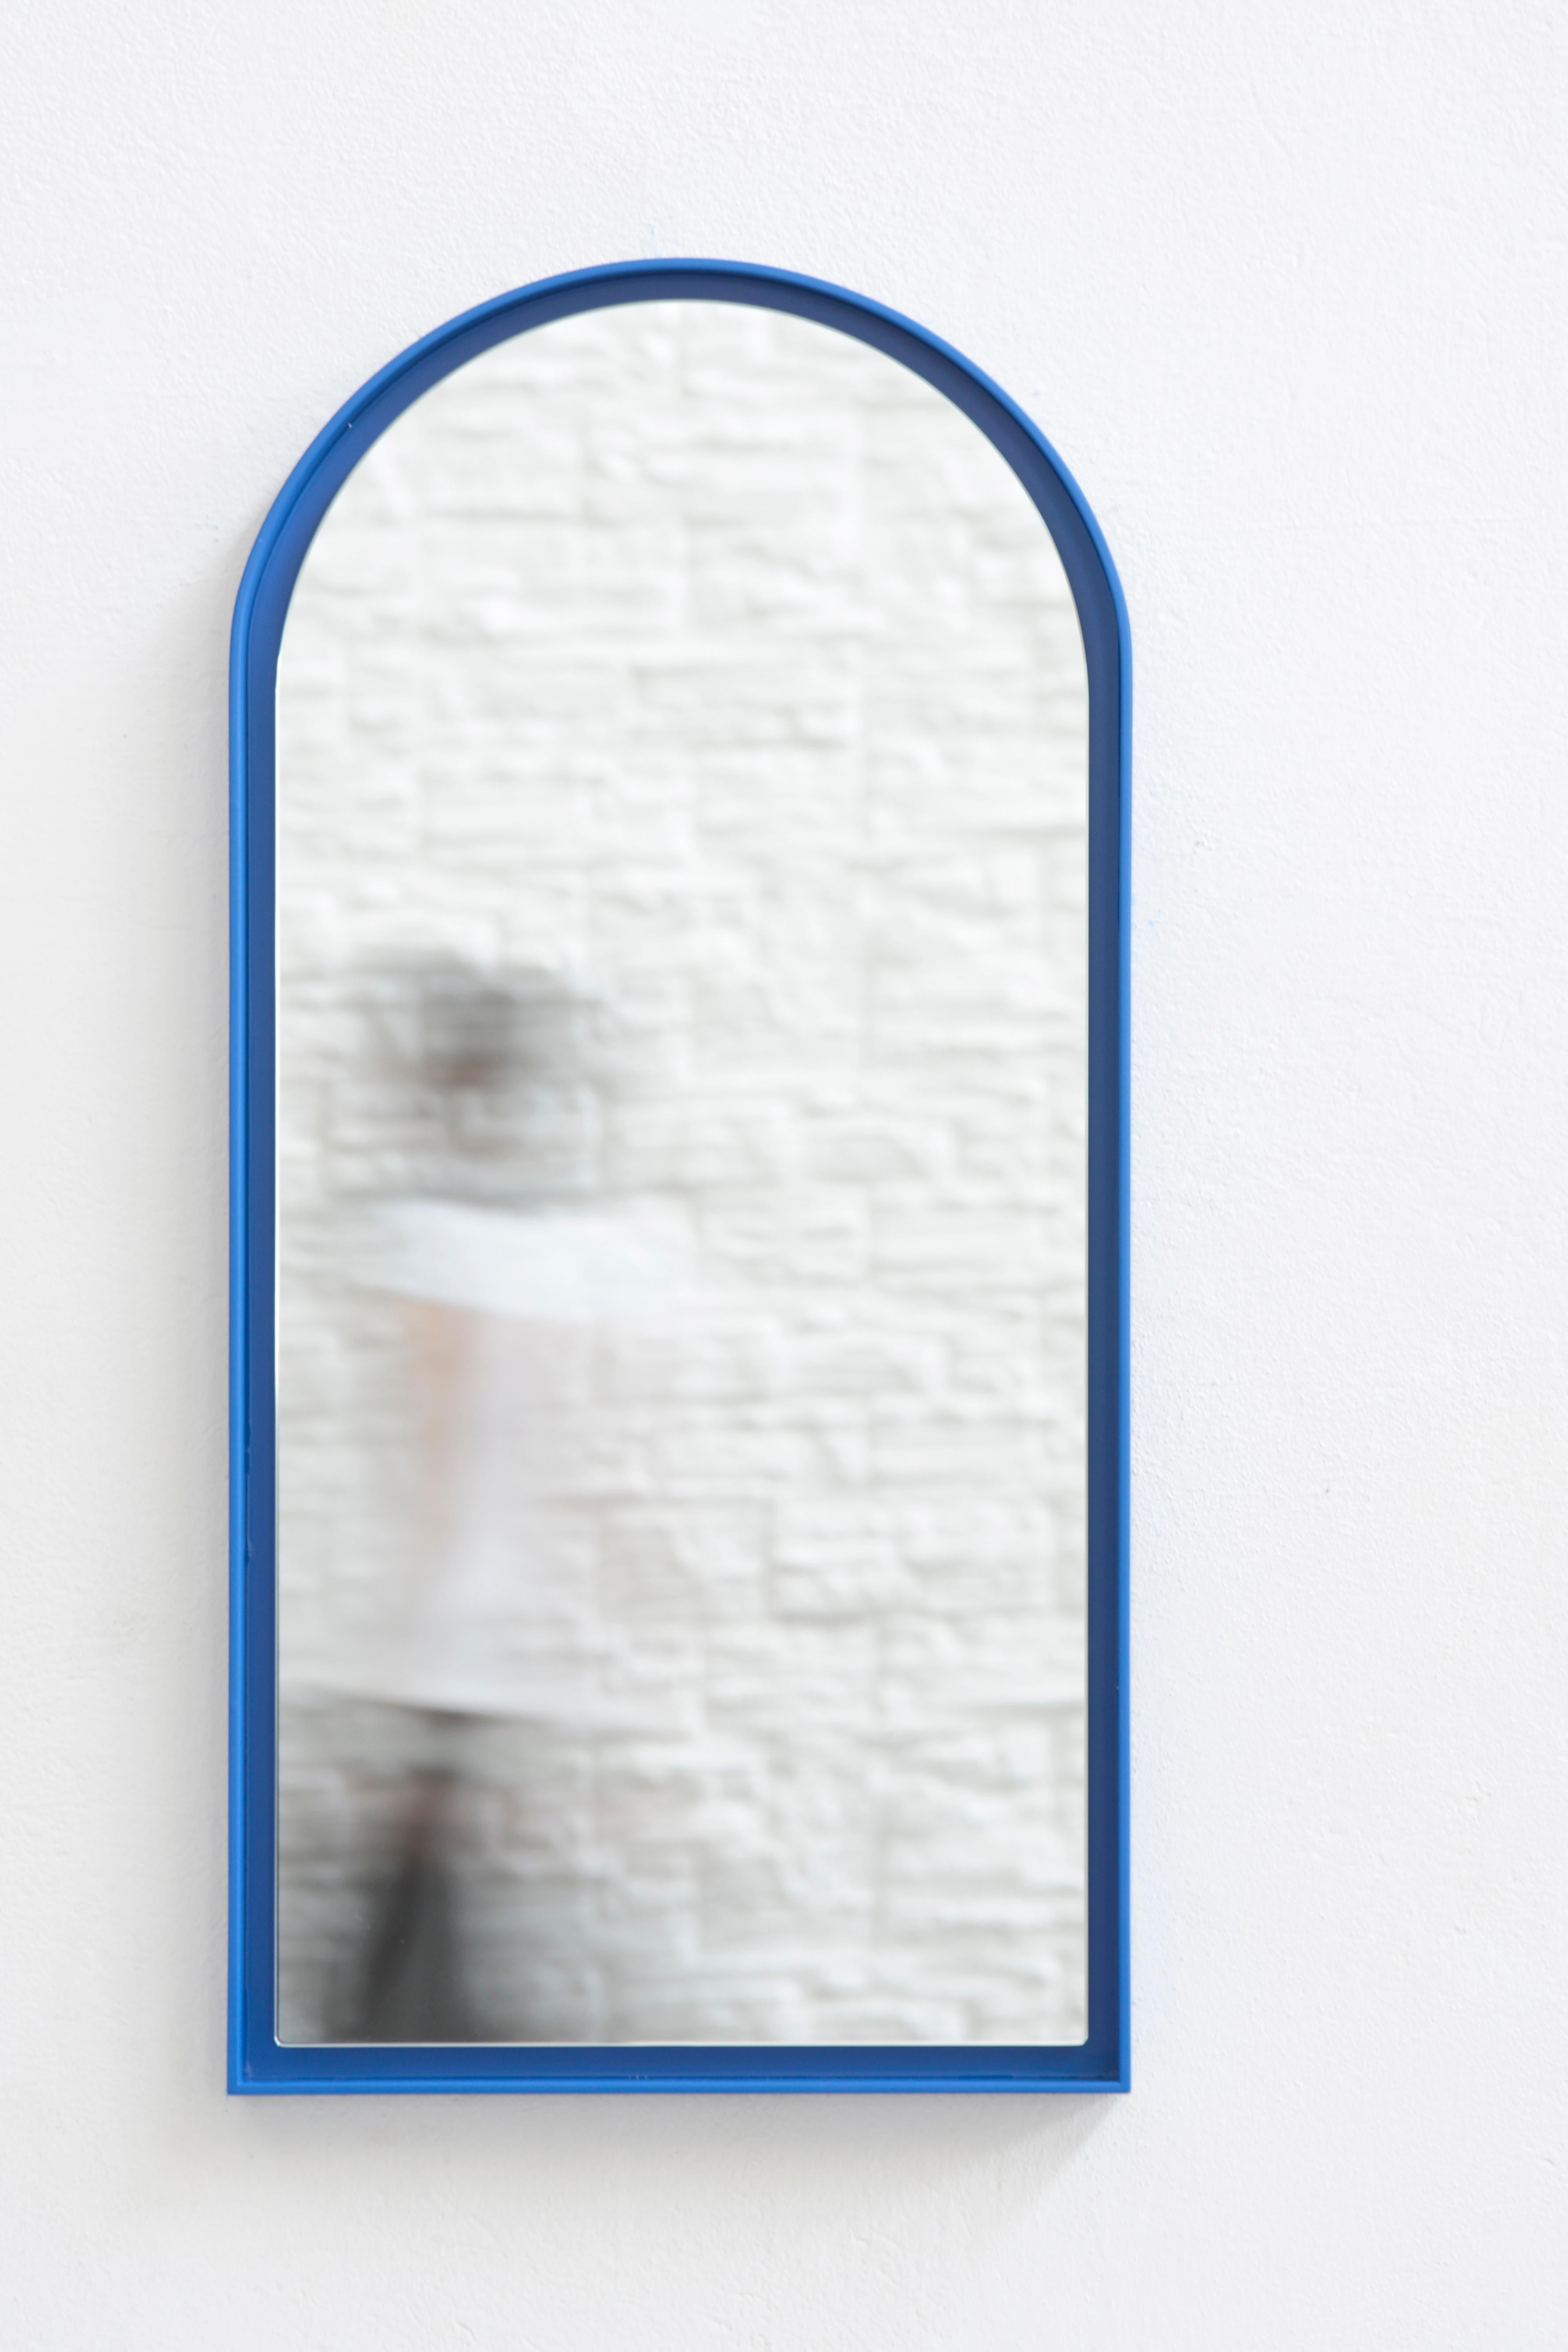 Miroir Panorami par Secondome Edizioni
Design/One : ZAVEN.
Dimensions : D 5 x L 45 x H 90 cm.
MATERIAL : Cadre et miroir en bois laqué.

Collectional / Production : Secondome. Disponible en blanc et en bleu. Également disponible en taille plus